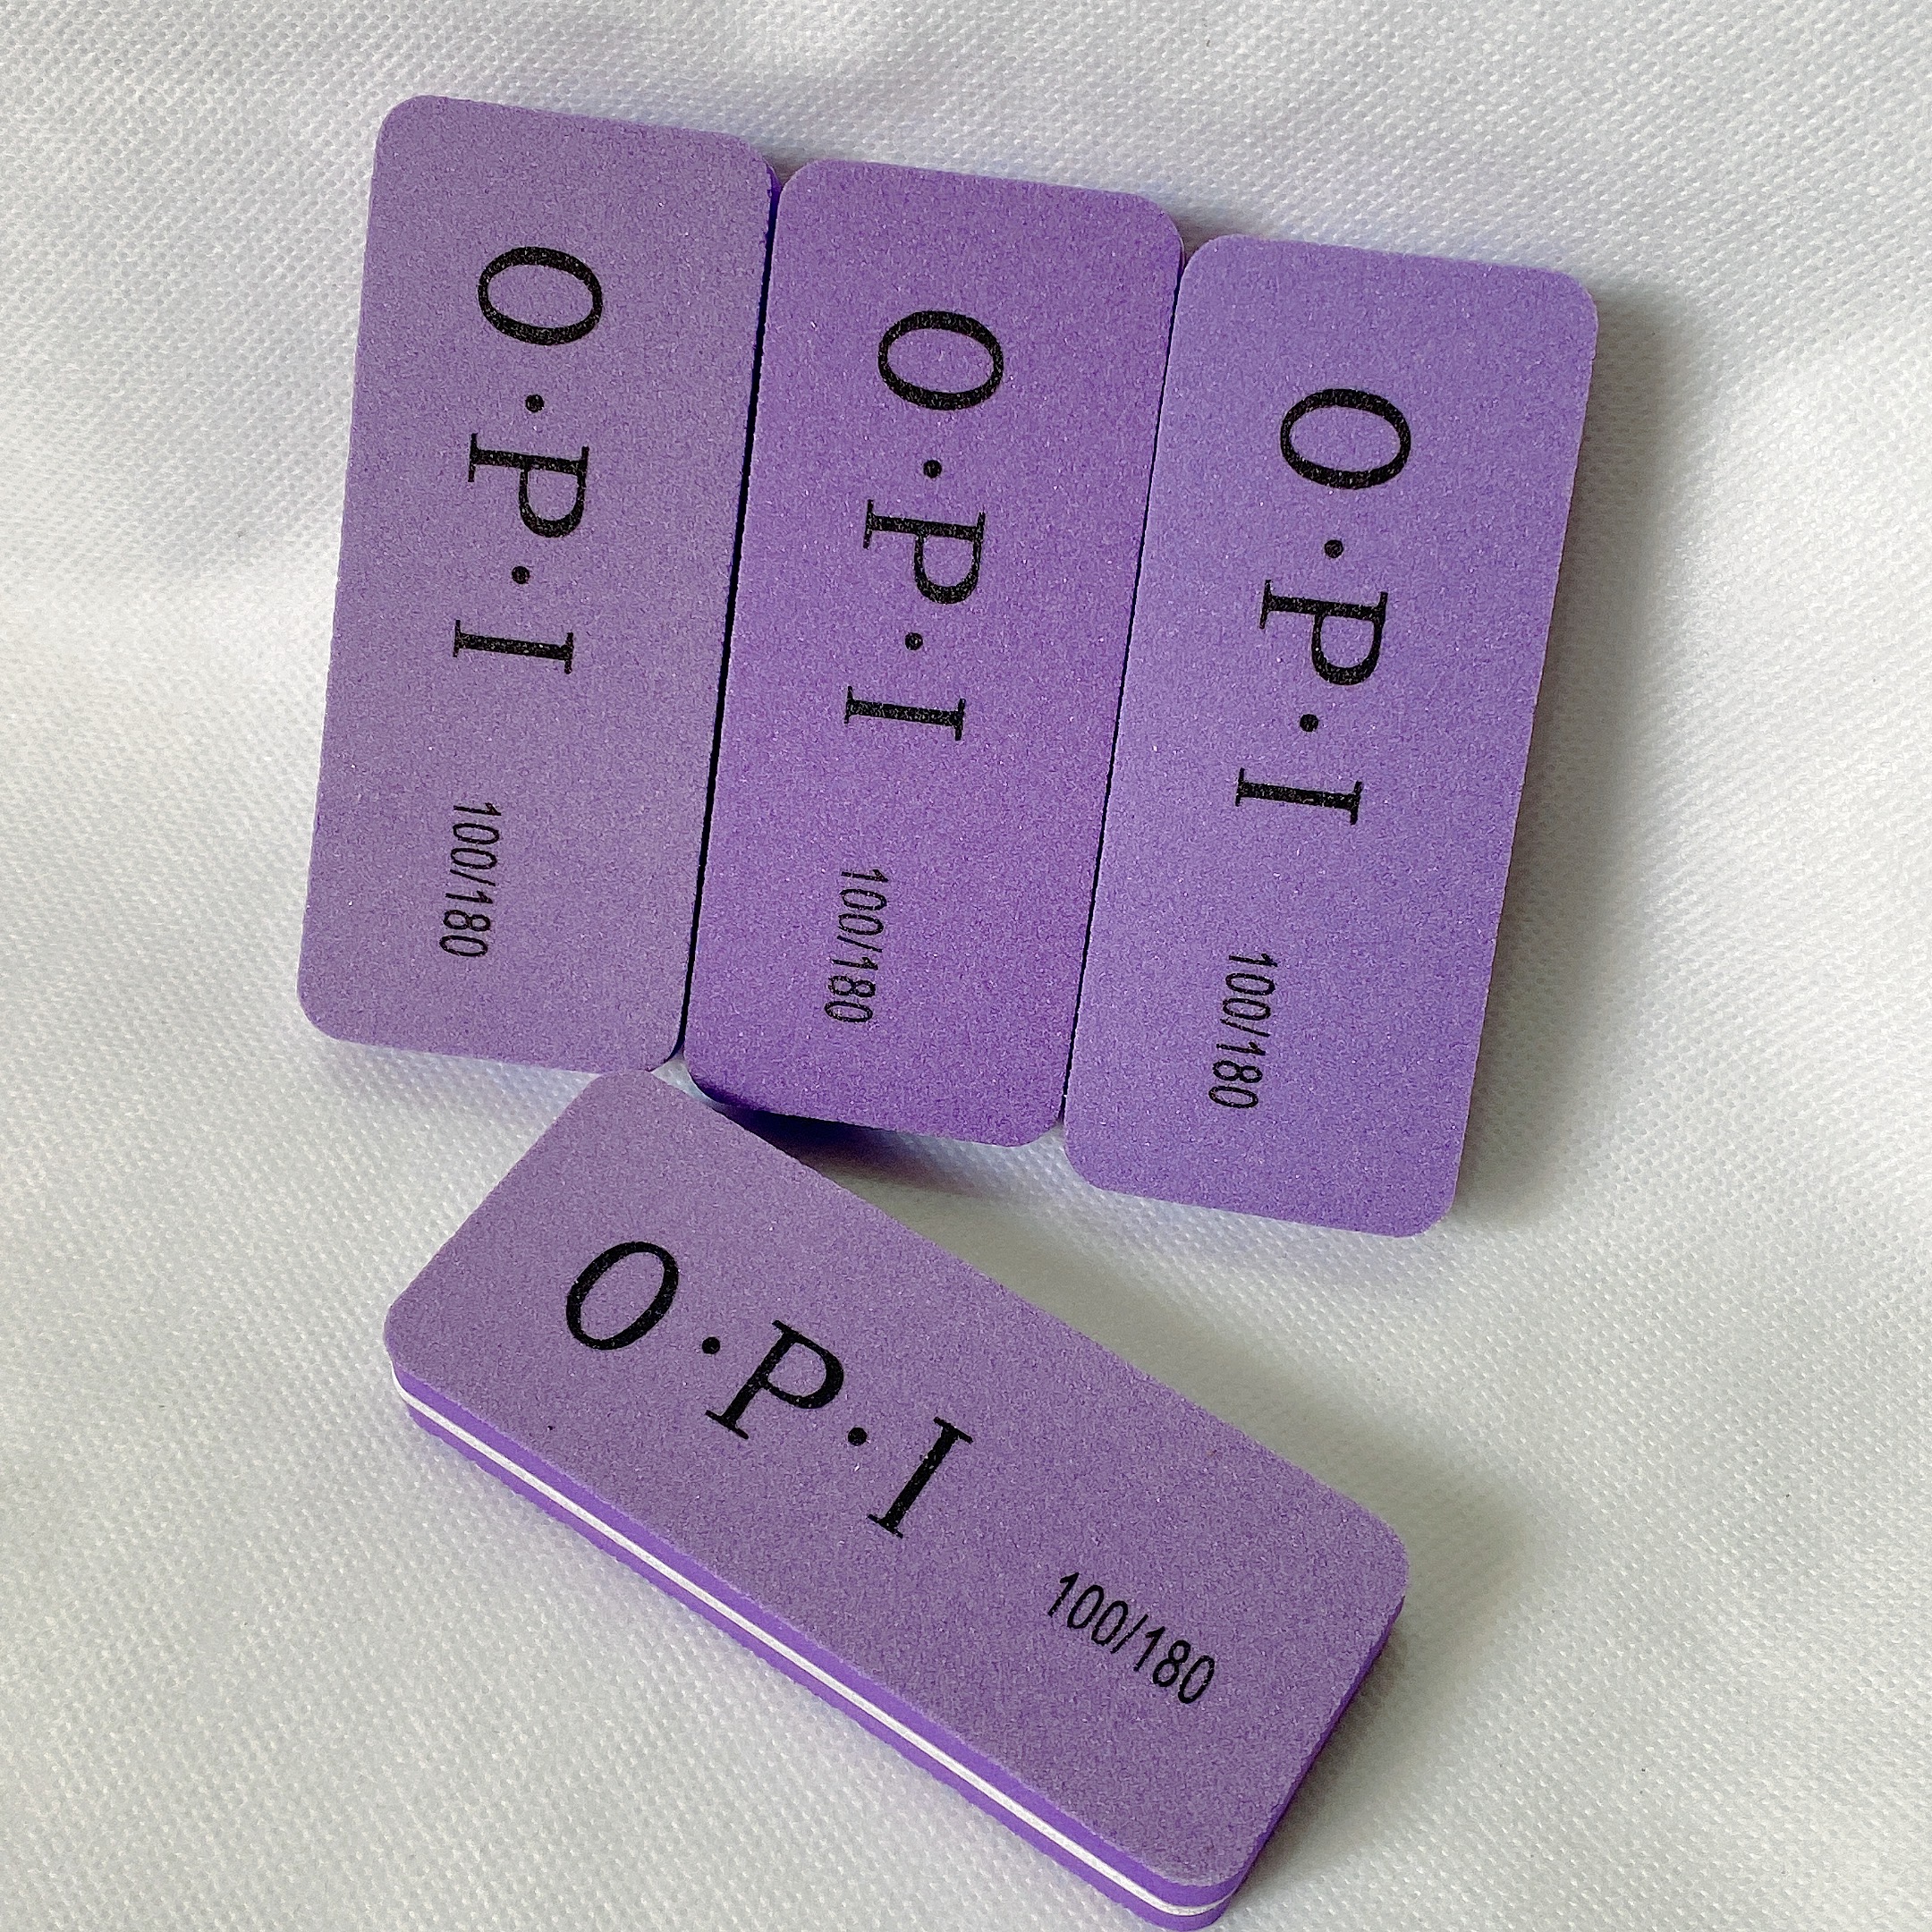 Phào dũa móng OPI chuyên dụng cho ngành nail